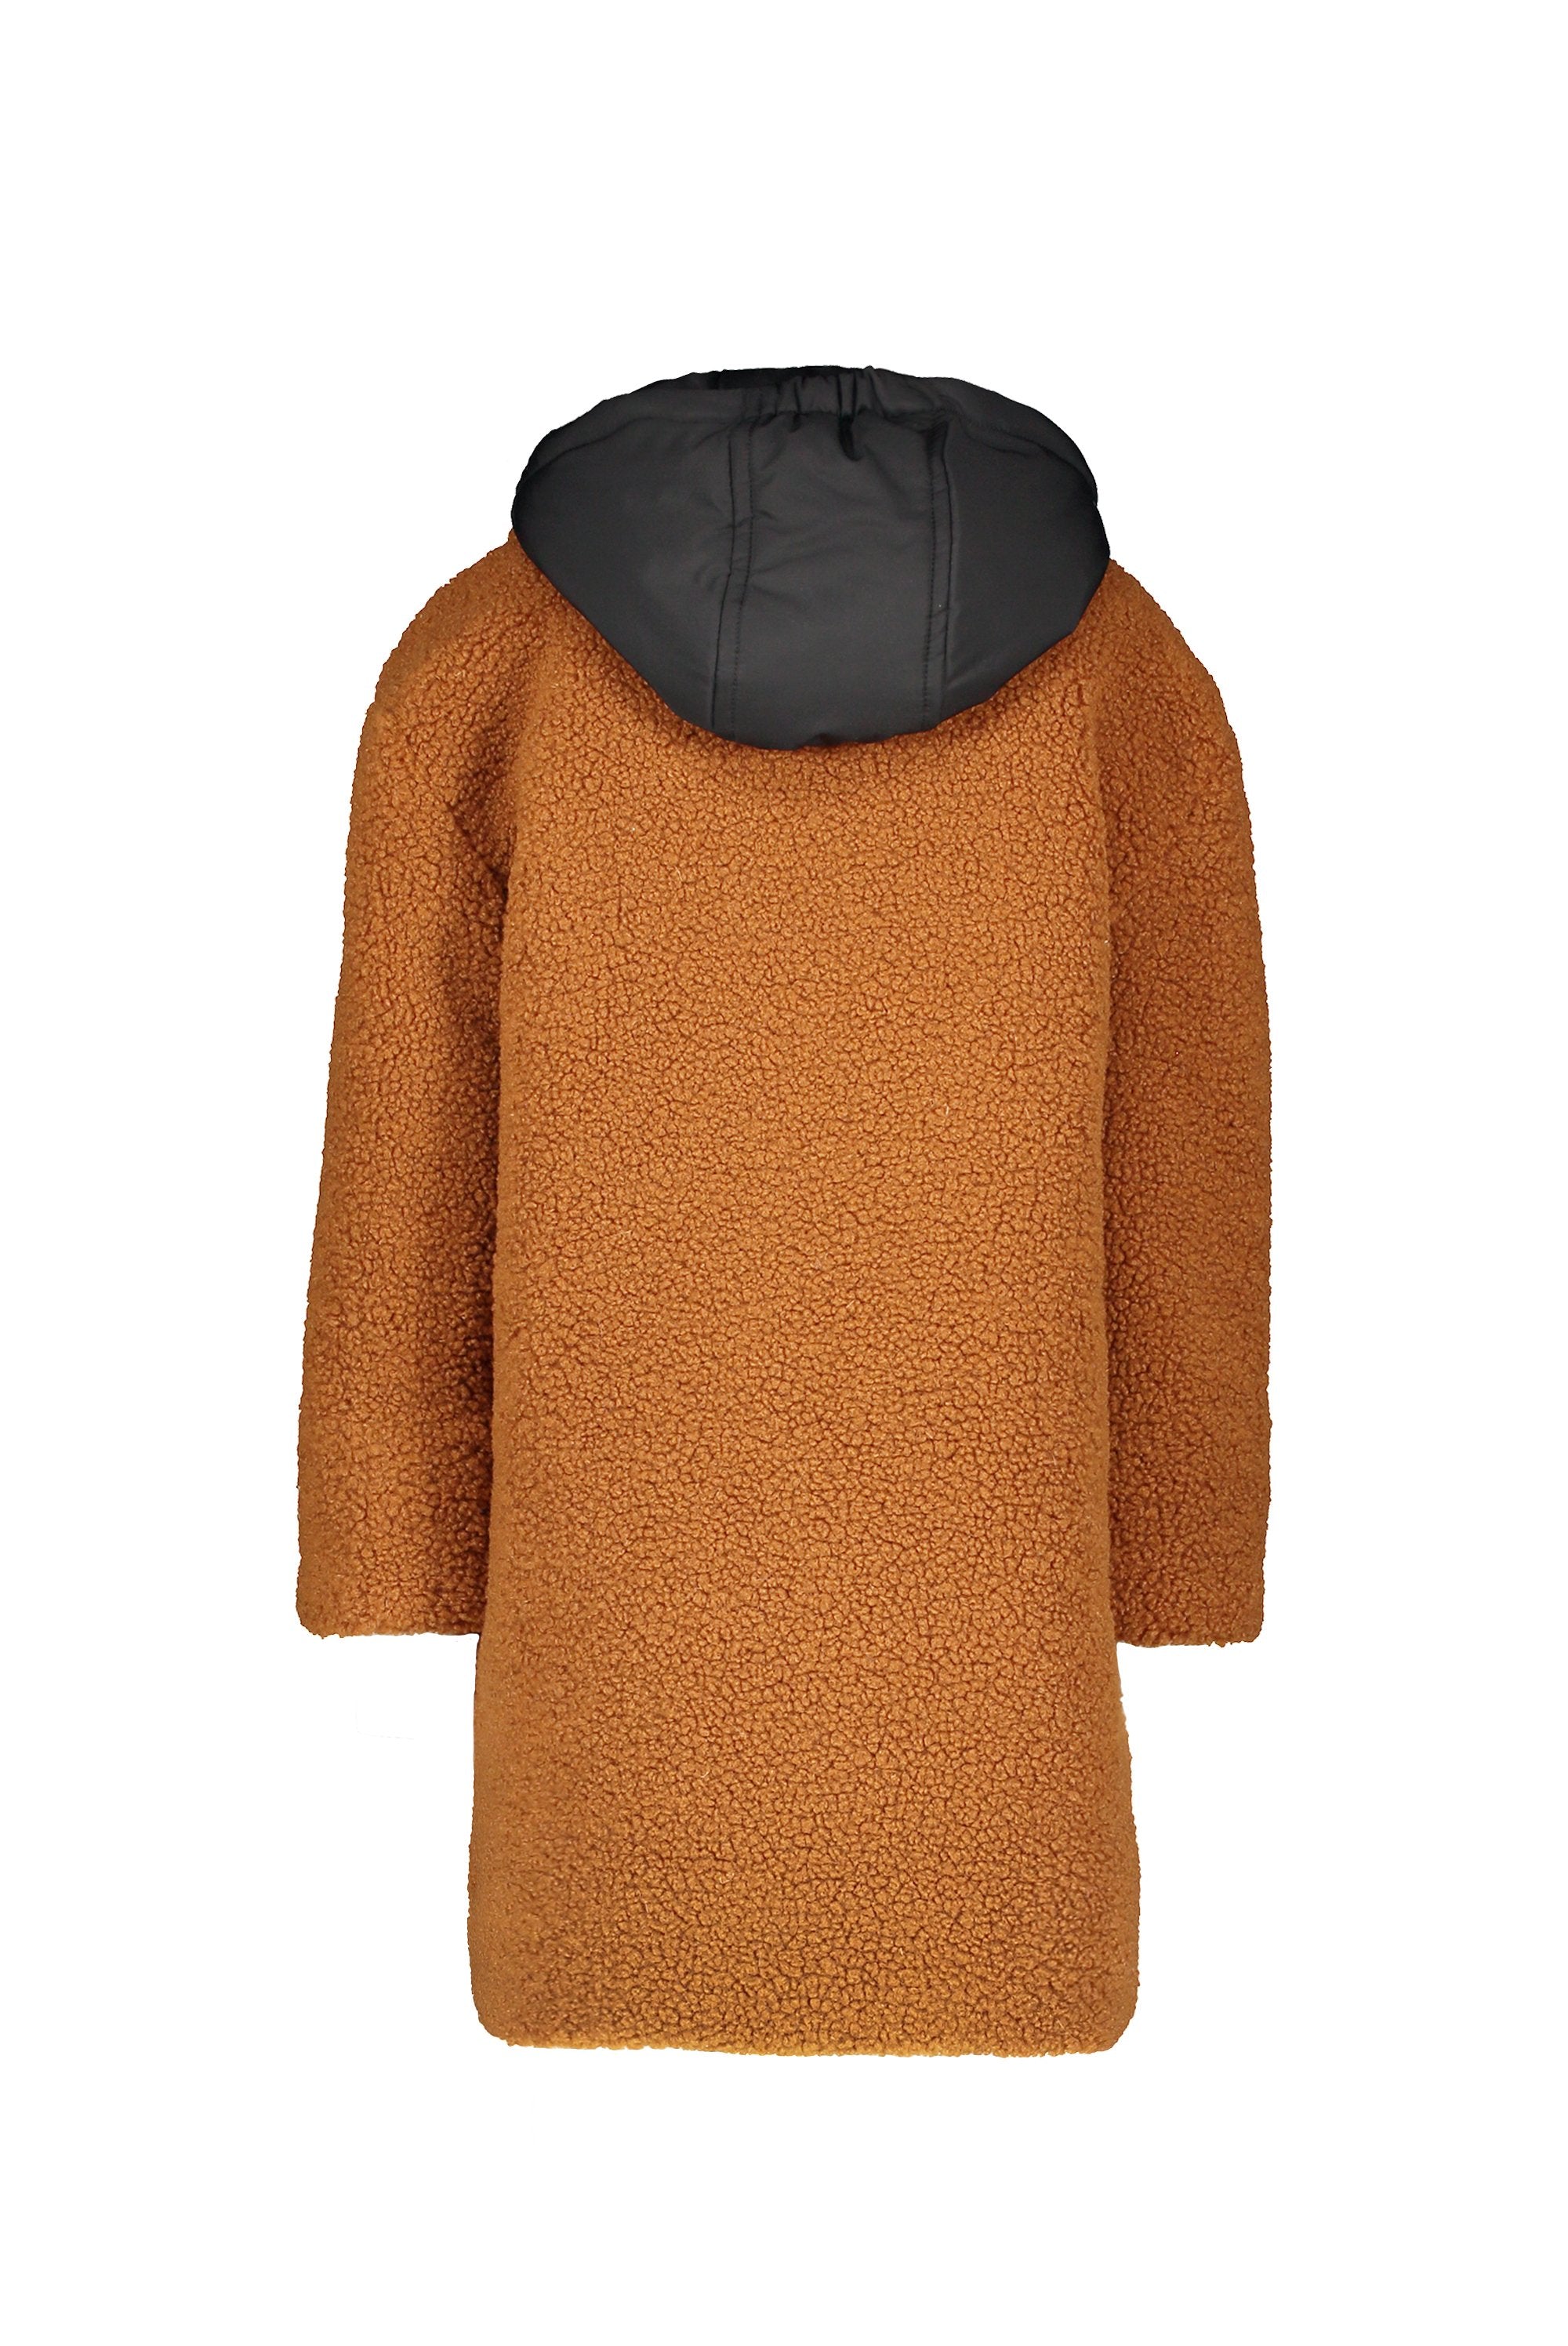 Meisjes MT fancy coat van Moodstreet in de kleur Rust in maat 158-164.